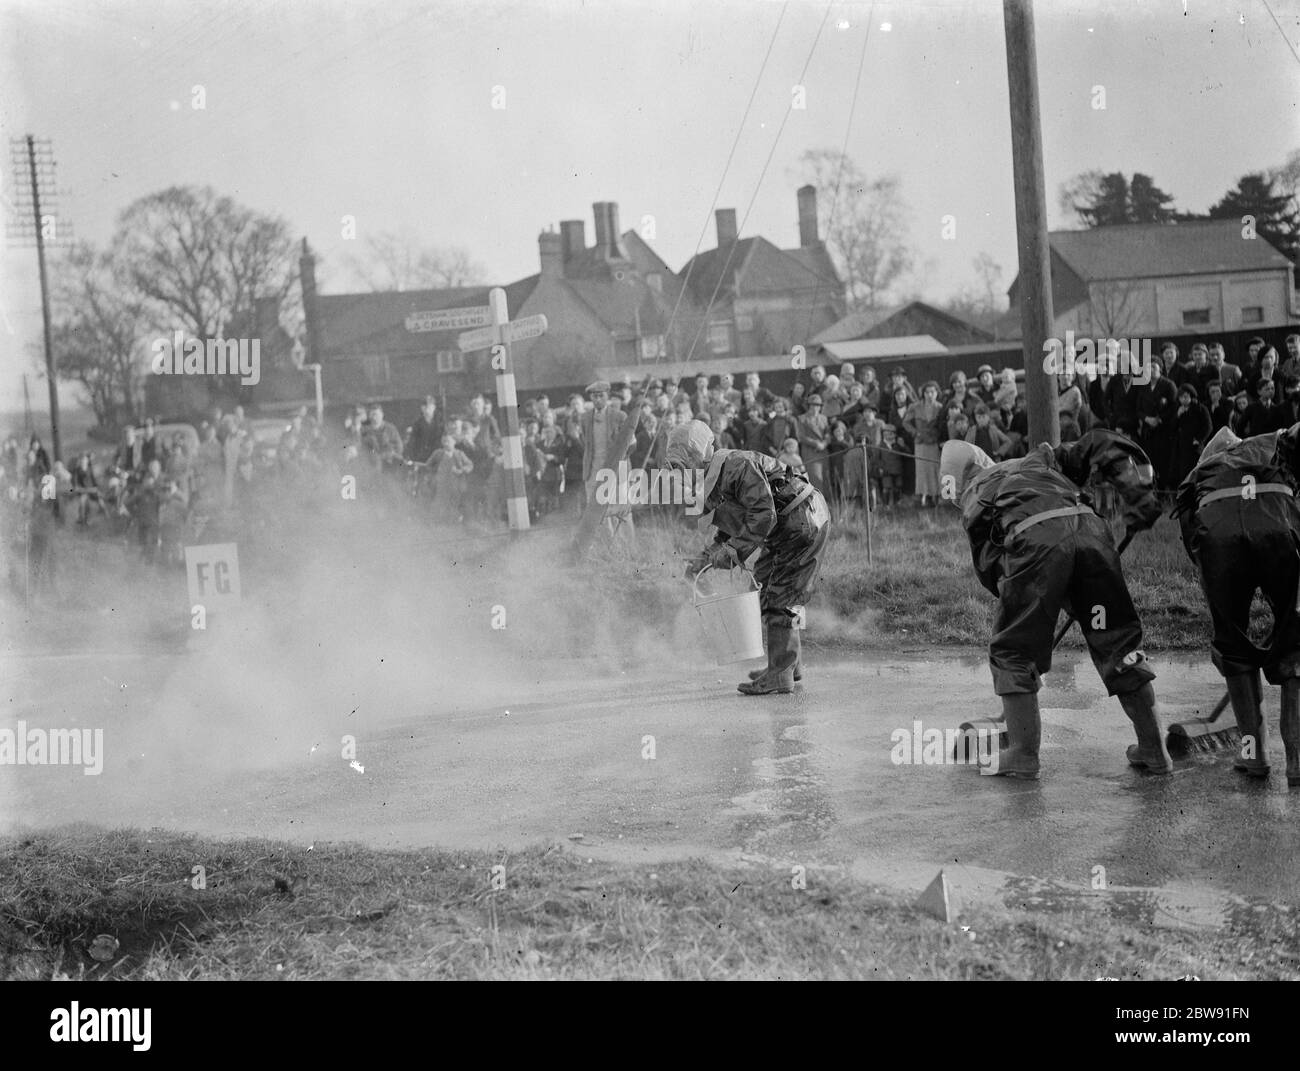 ARP (Luftangriffsvorkehrungen) Demonstrationen. Von einer Menschenmenge beobachtet, Feuerwehrleute in Green Street Green in Schutzkleidung und Gasmasken, Waschen die Straße hinunter, Dekontaminieren vermeintlichen Senfgas. März 1938 Stockfoto